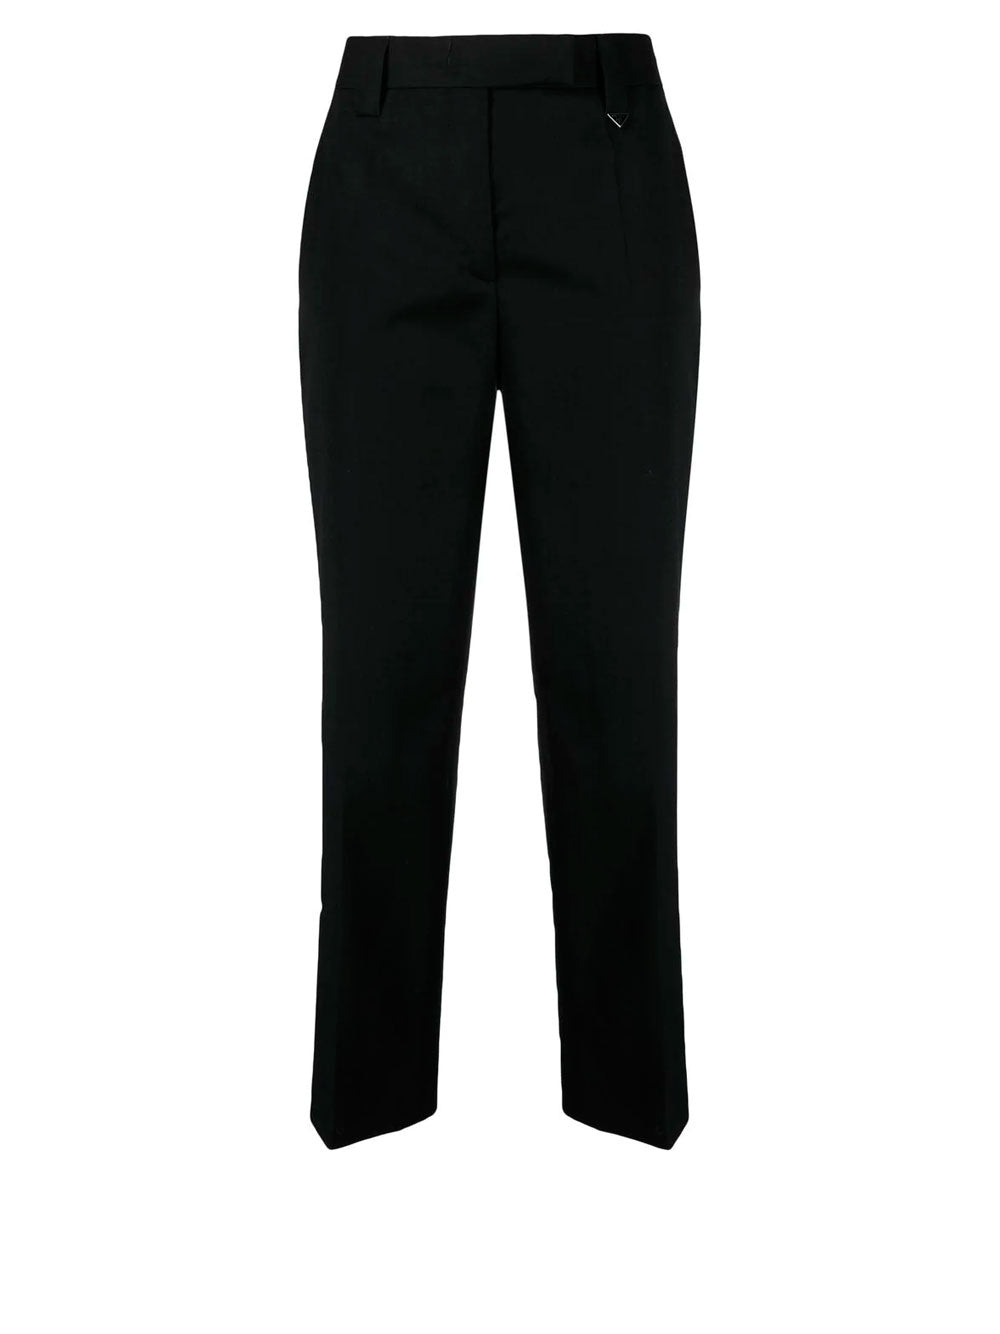 Prada women techno stretch cropped pants black EU38/US2 | Stretch crop pants,  Black pants, Cropped pants